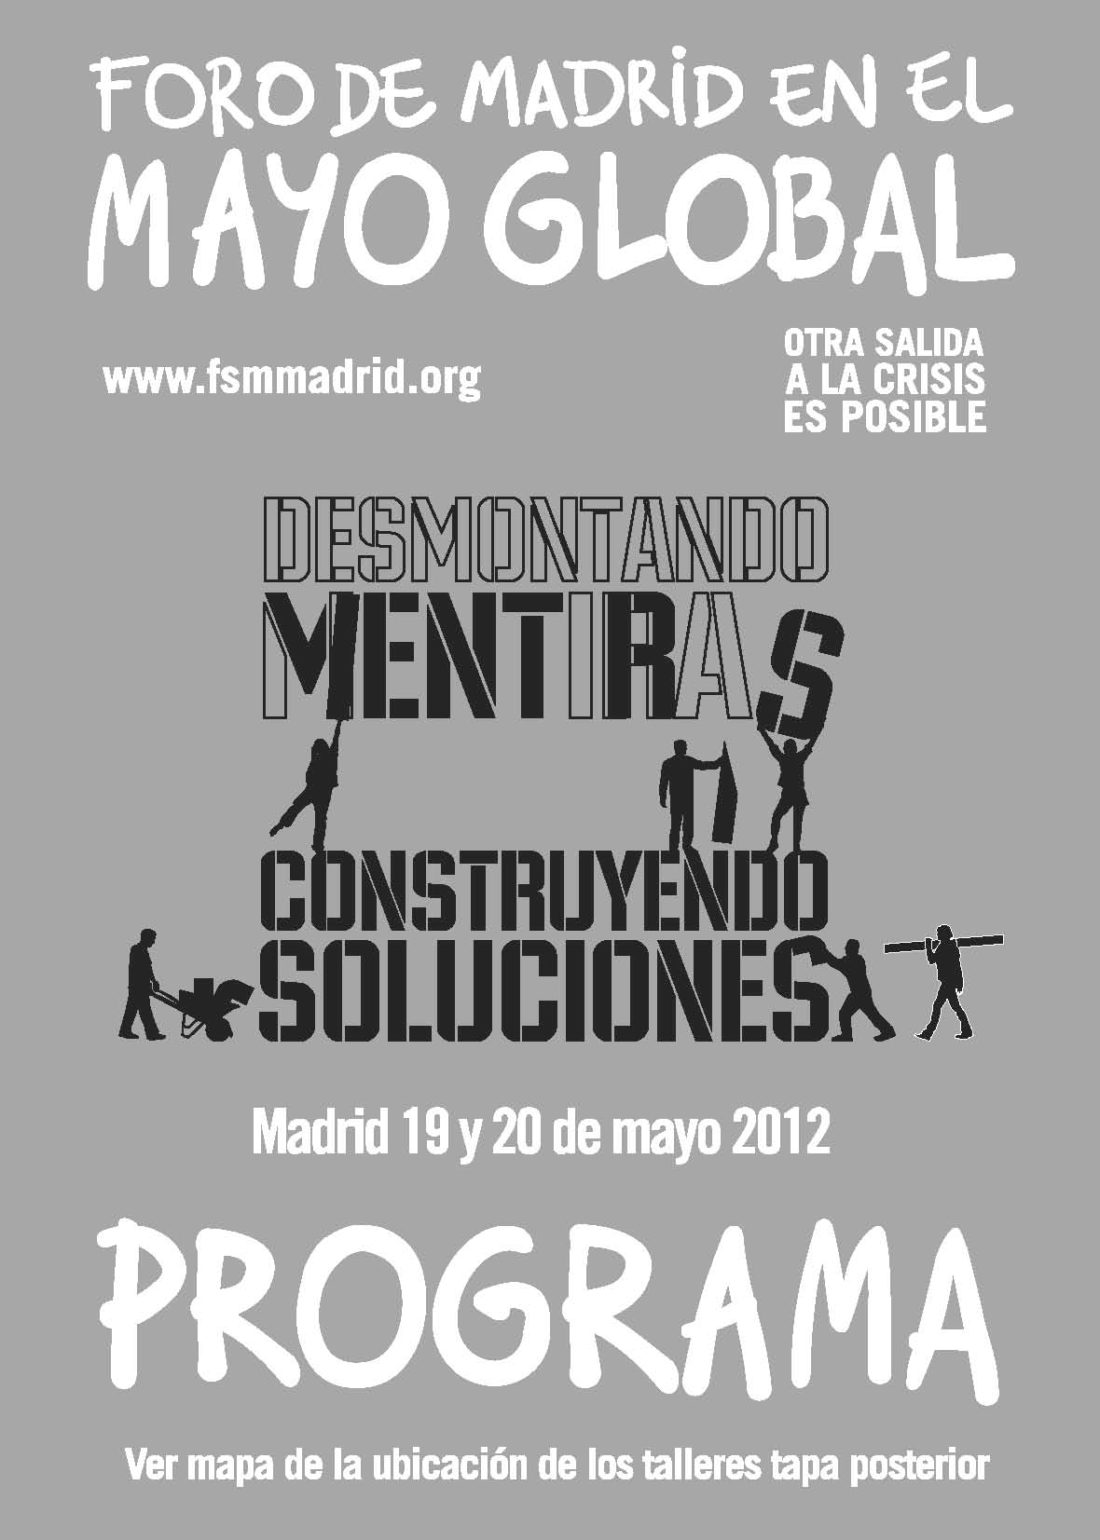 Foro de Madrid en el mayo global: Desmontando mentiras, construyendo soluciones